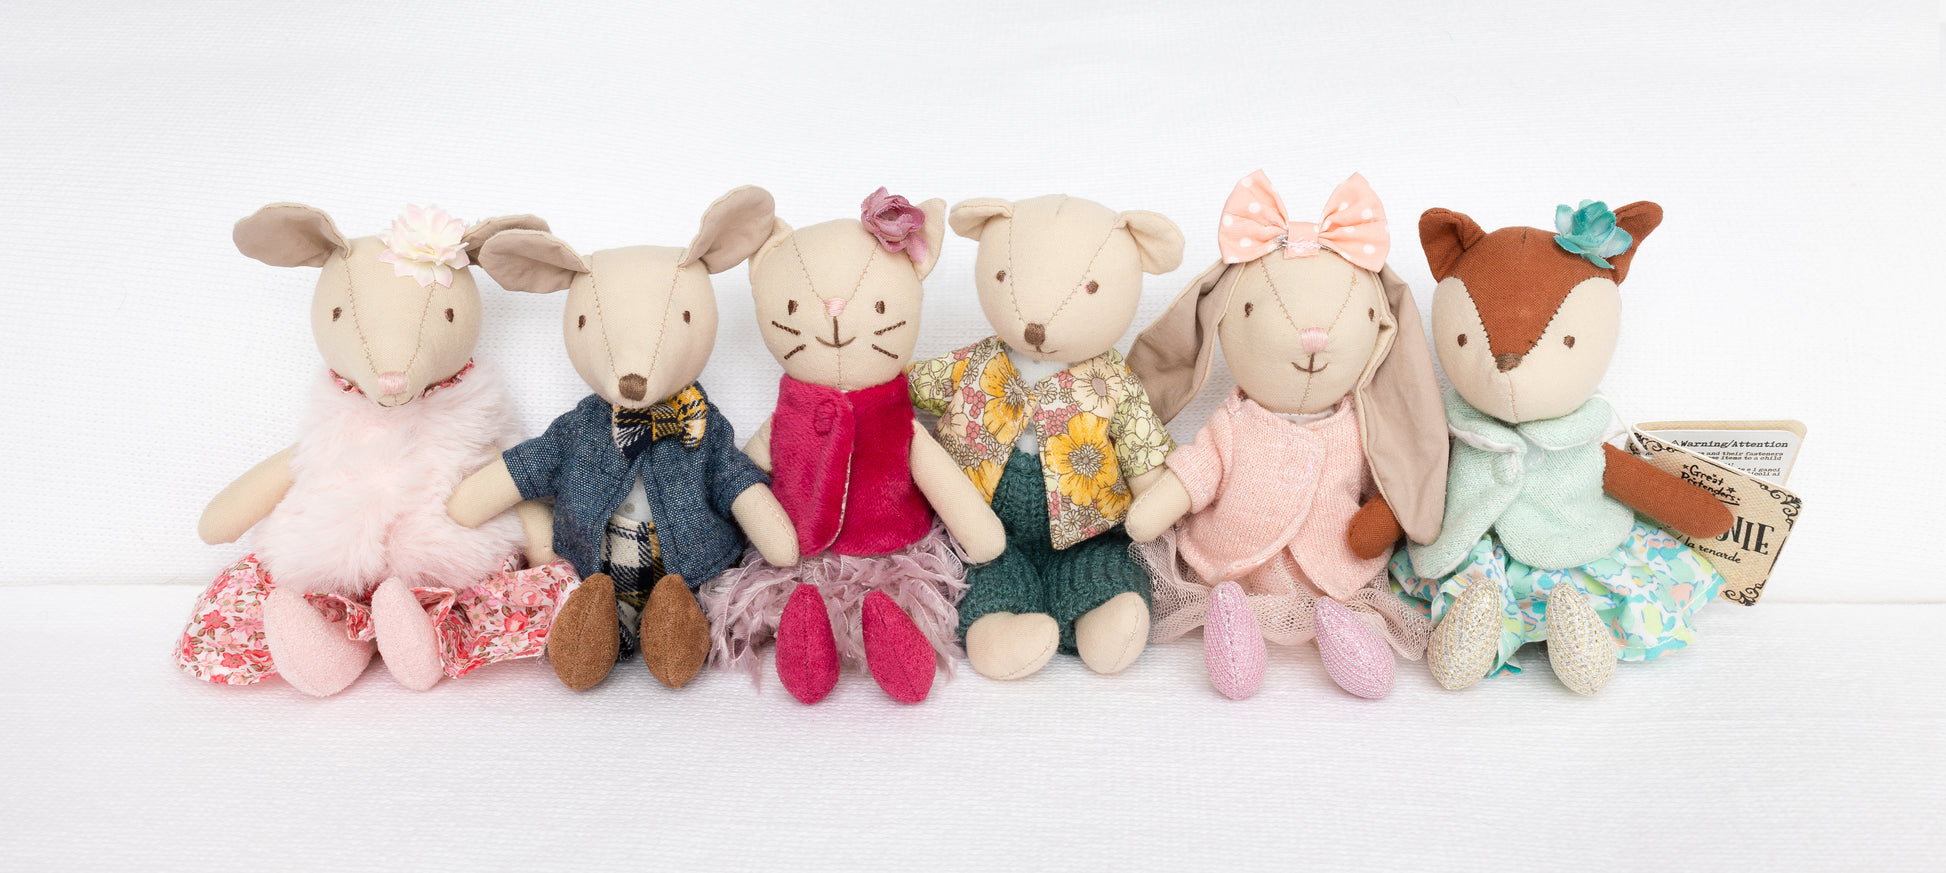 mini stuffed dolls and friends